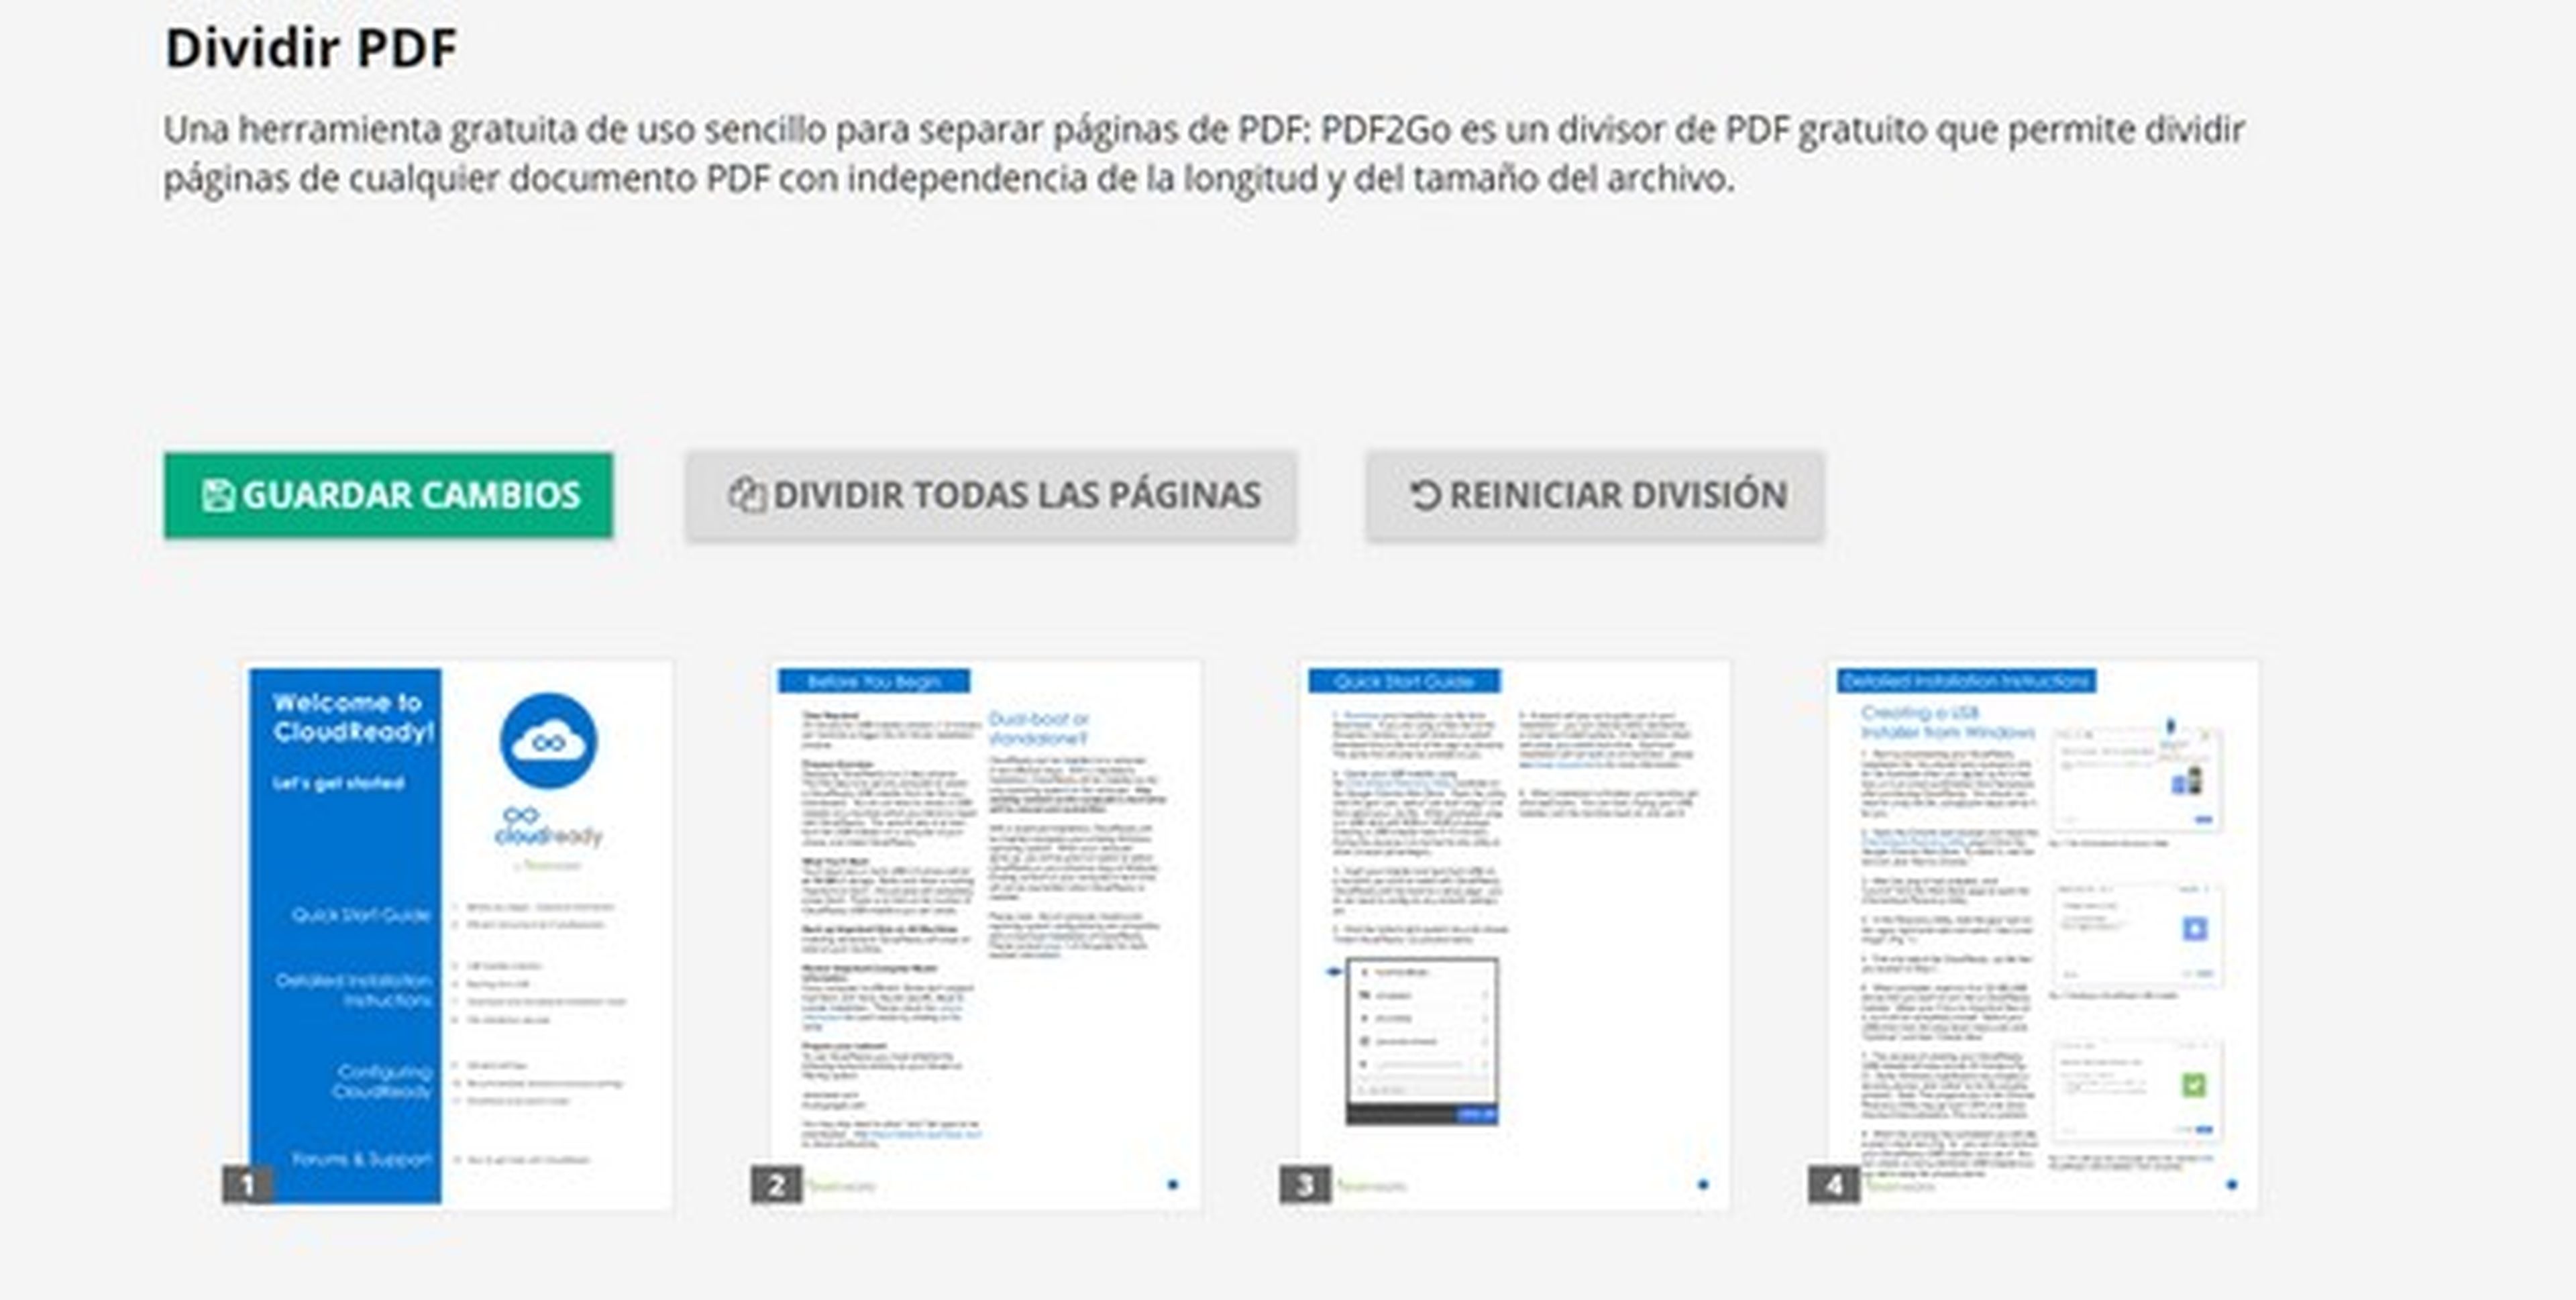 Cómo dividir un PDF online para separar páginas